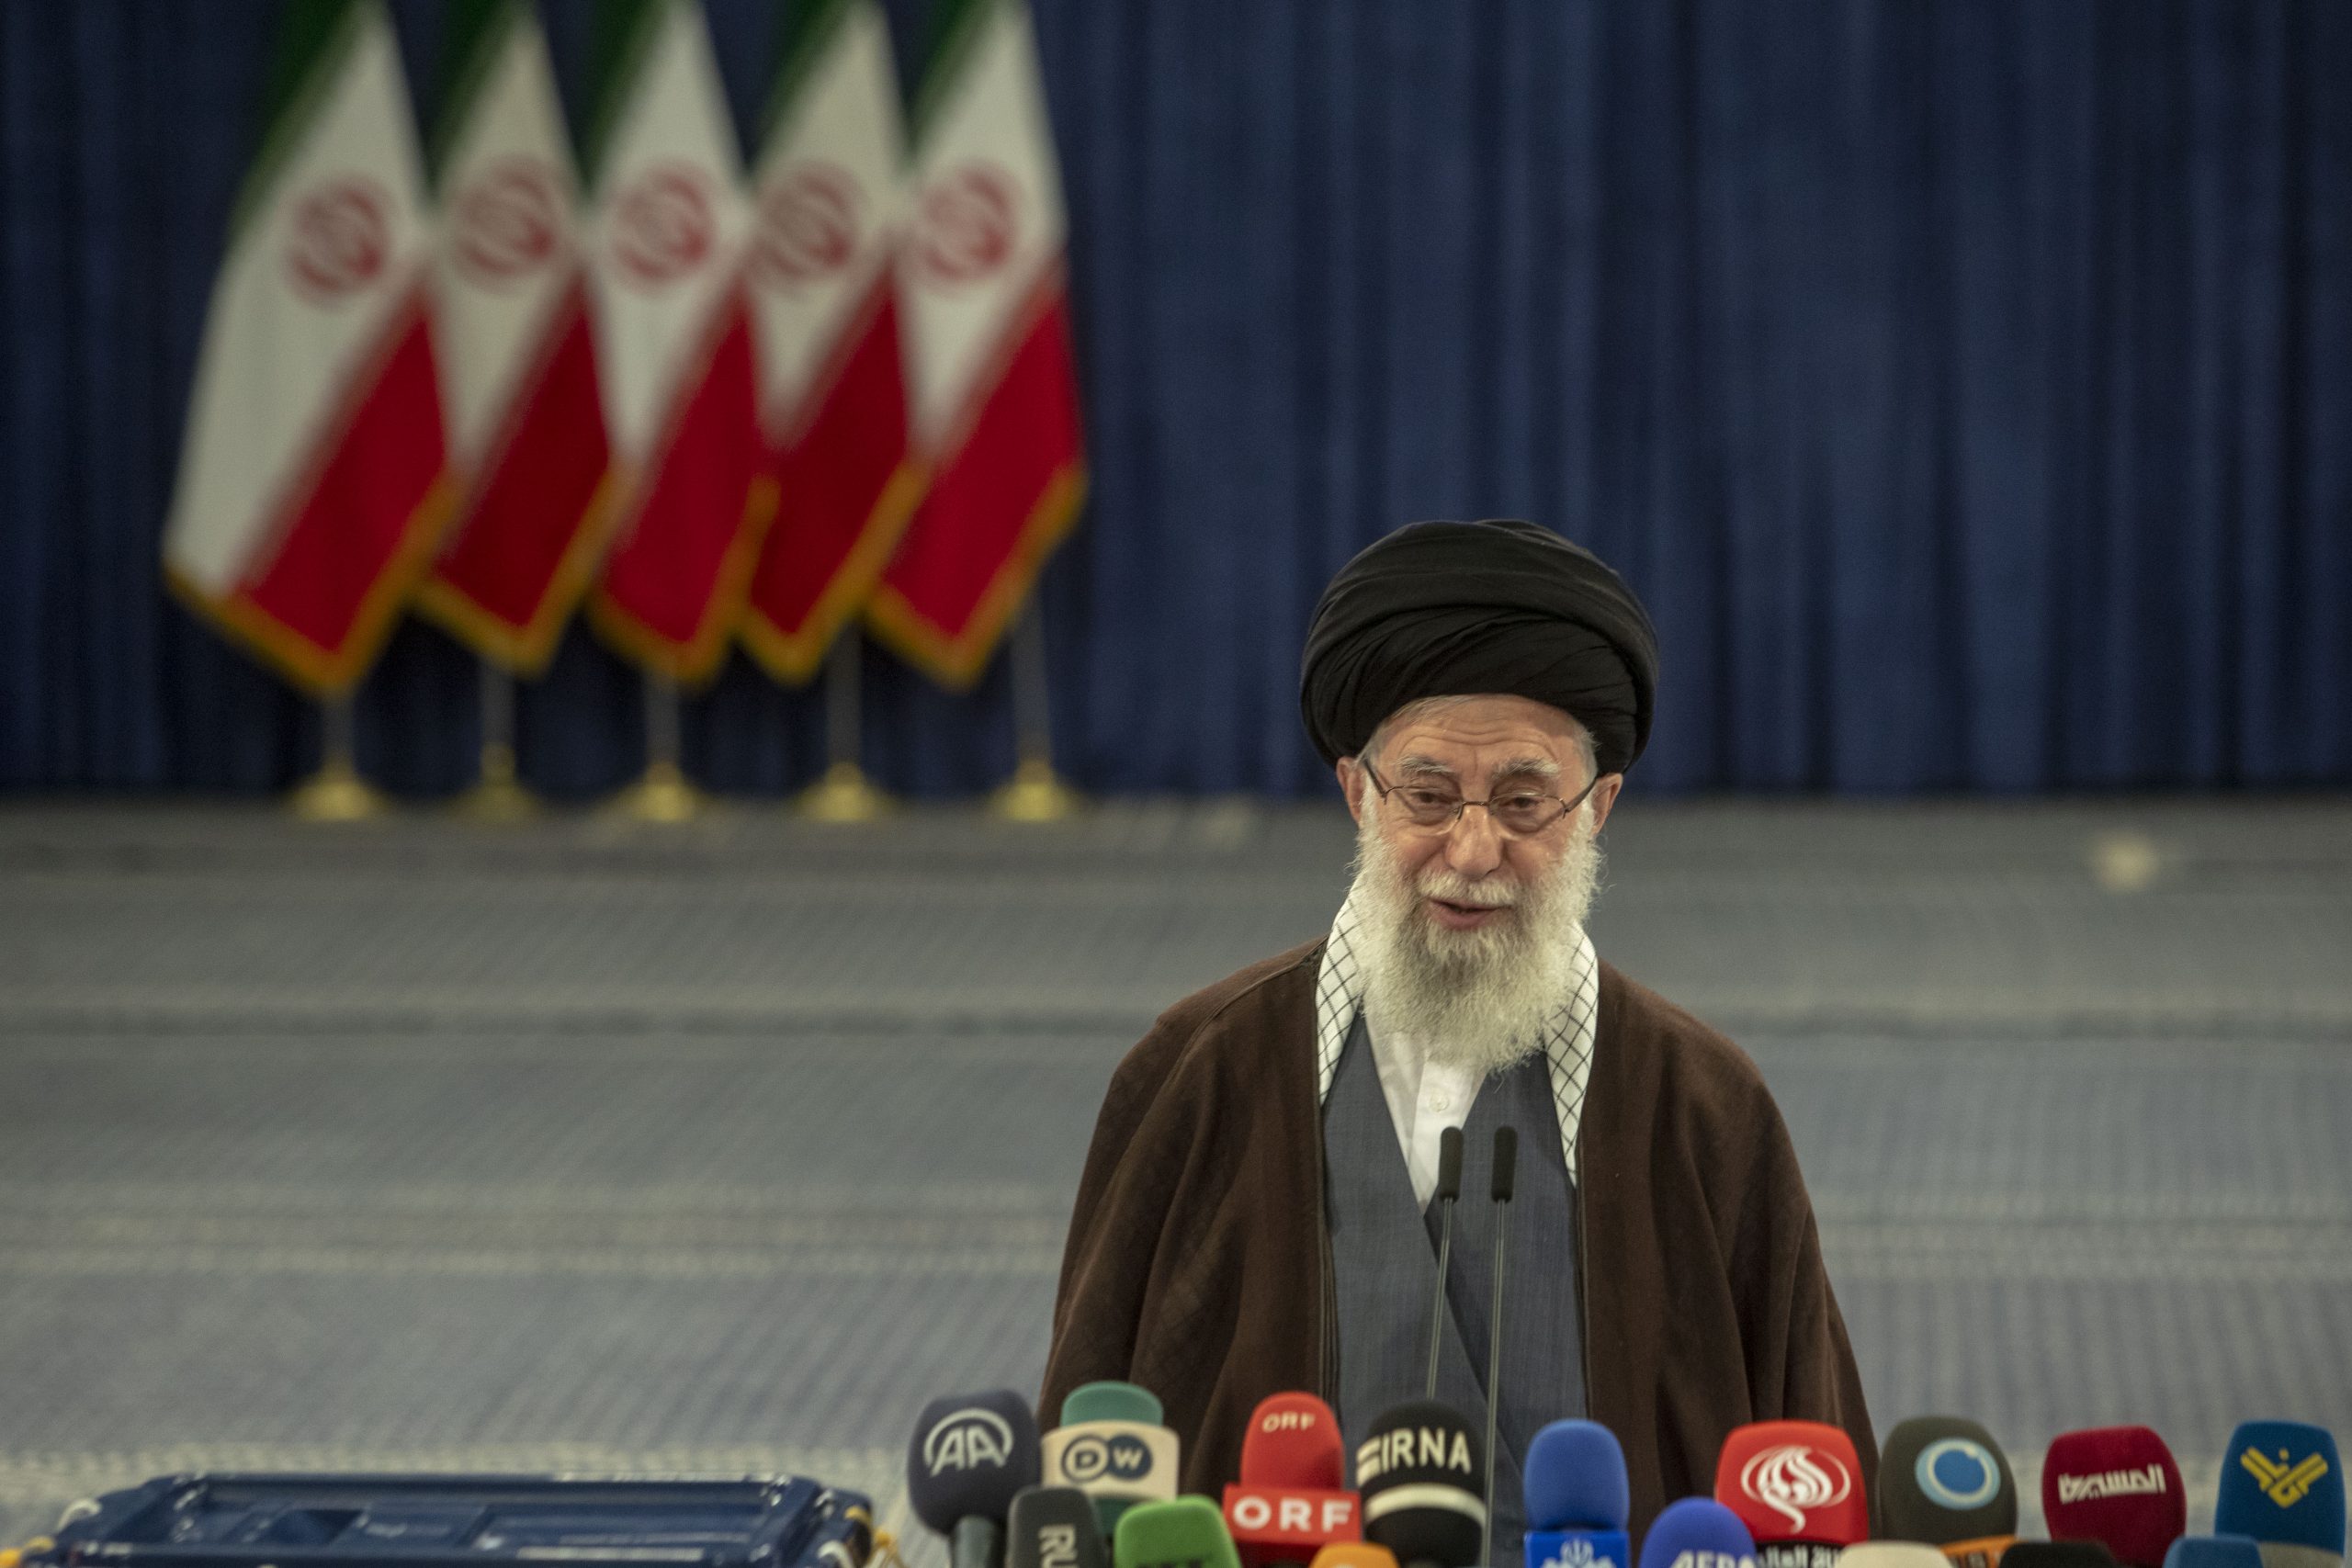 Tehran Plays Down Reported Israeli Attacks, Signals No Retaliation